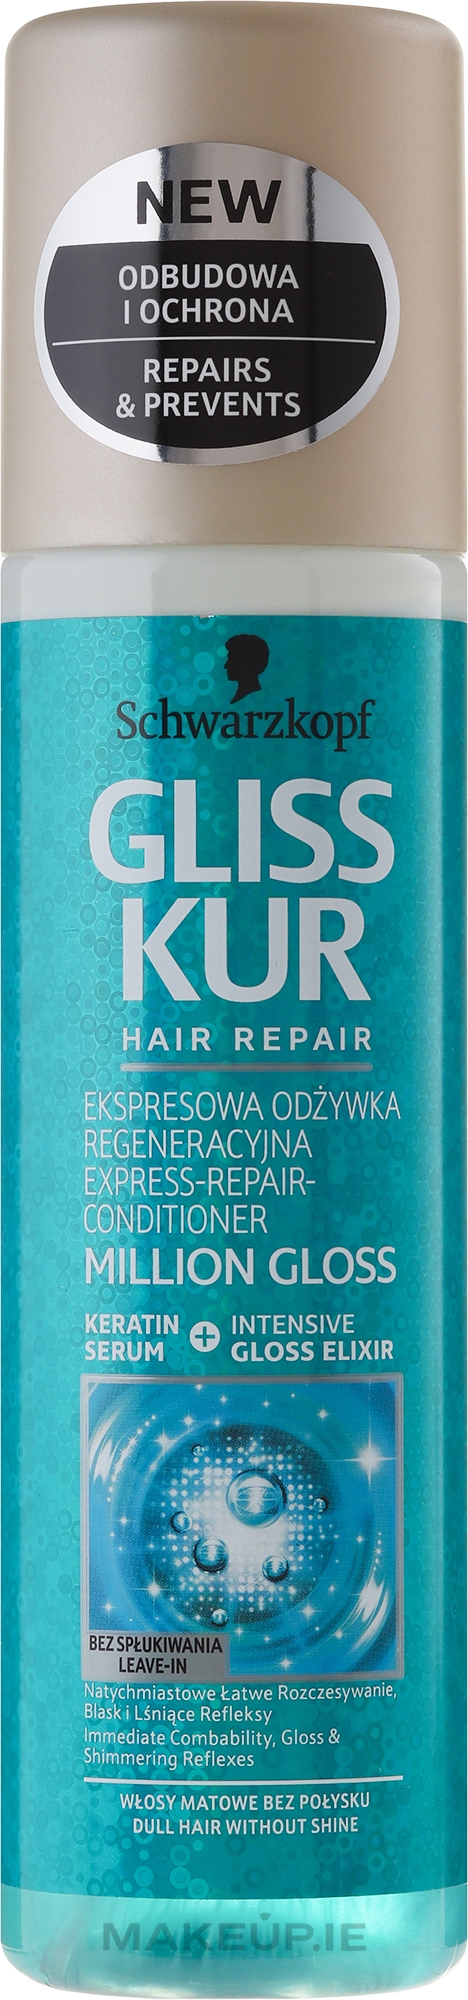 gliss kur million gloss ekspresowa odżywka regeneracyjna do włosów